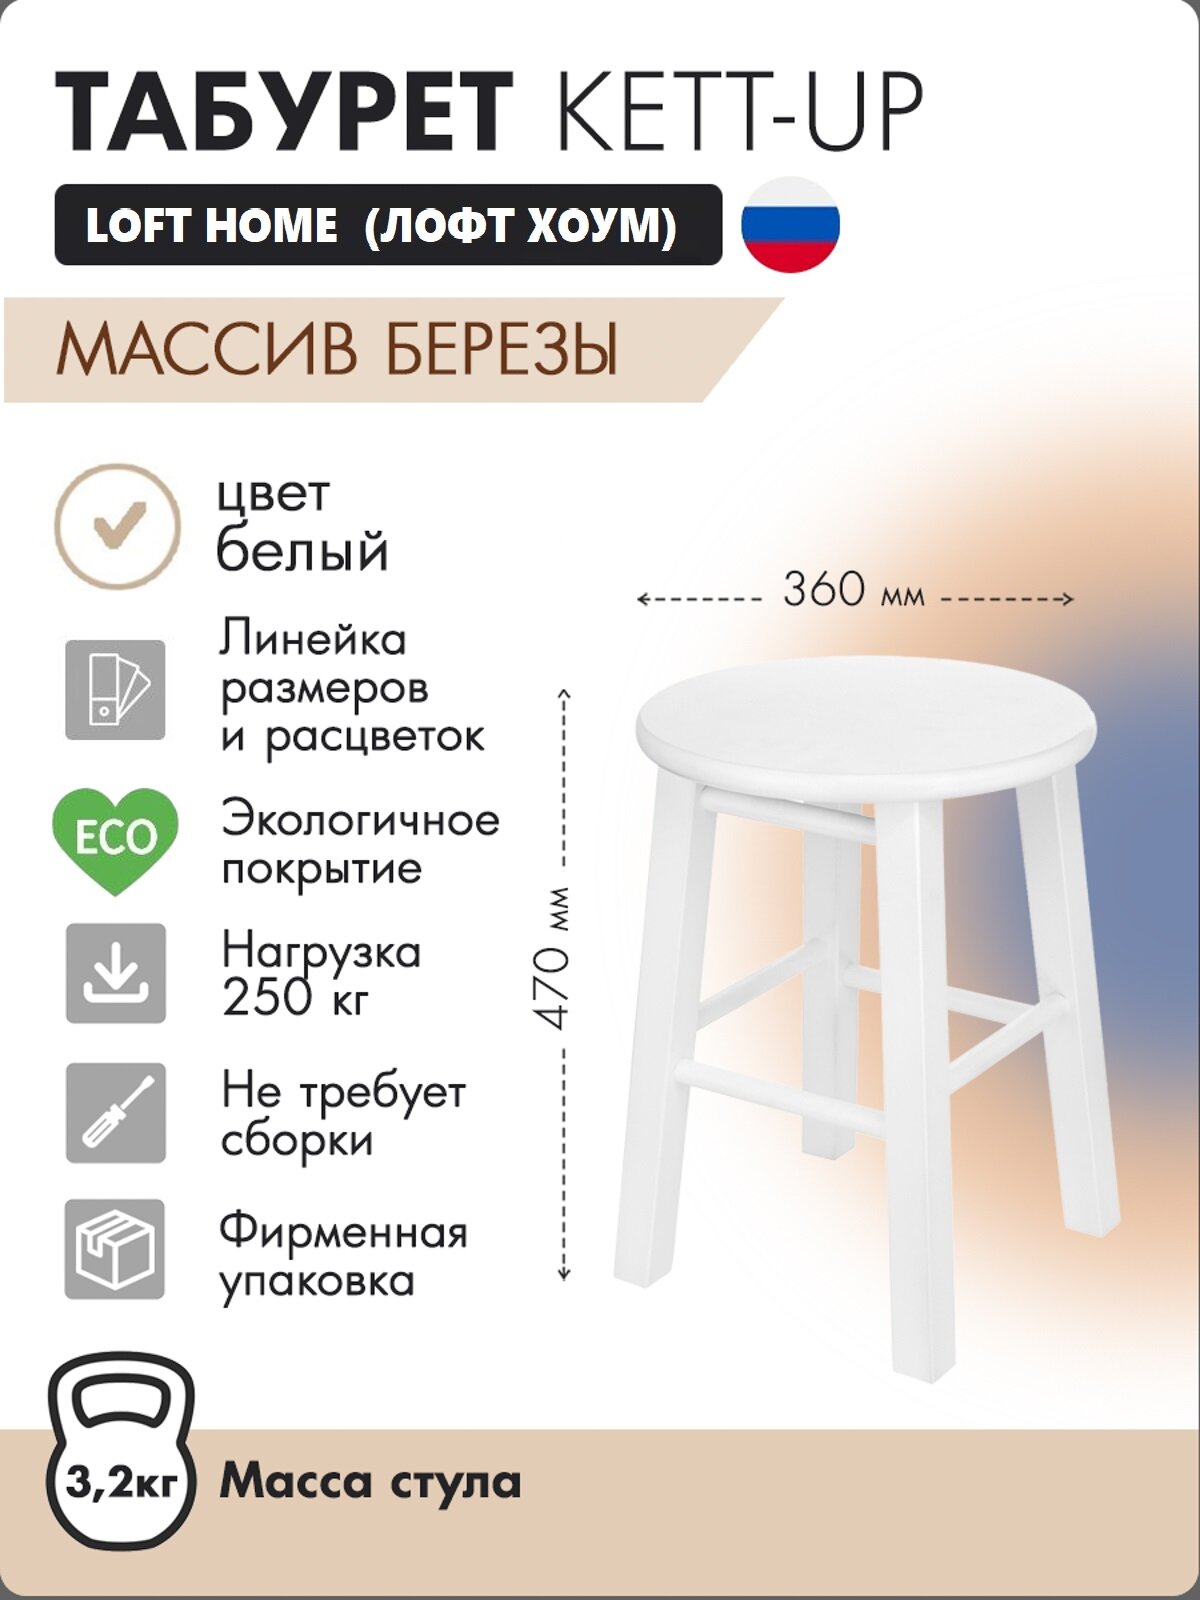 Табурет KETT-UP LOFT HOME деревянный, KU337.4, сиденье круглое, белый